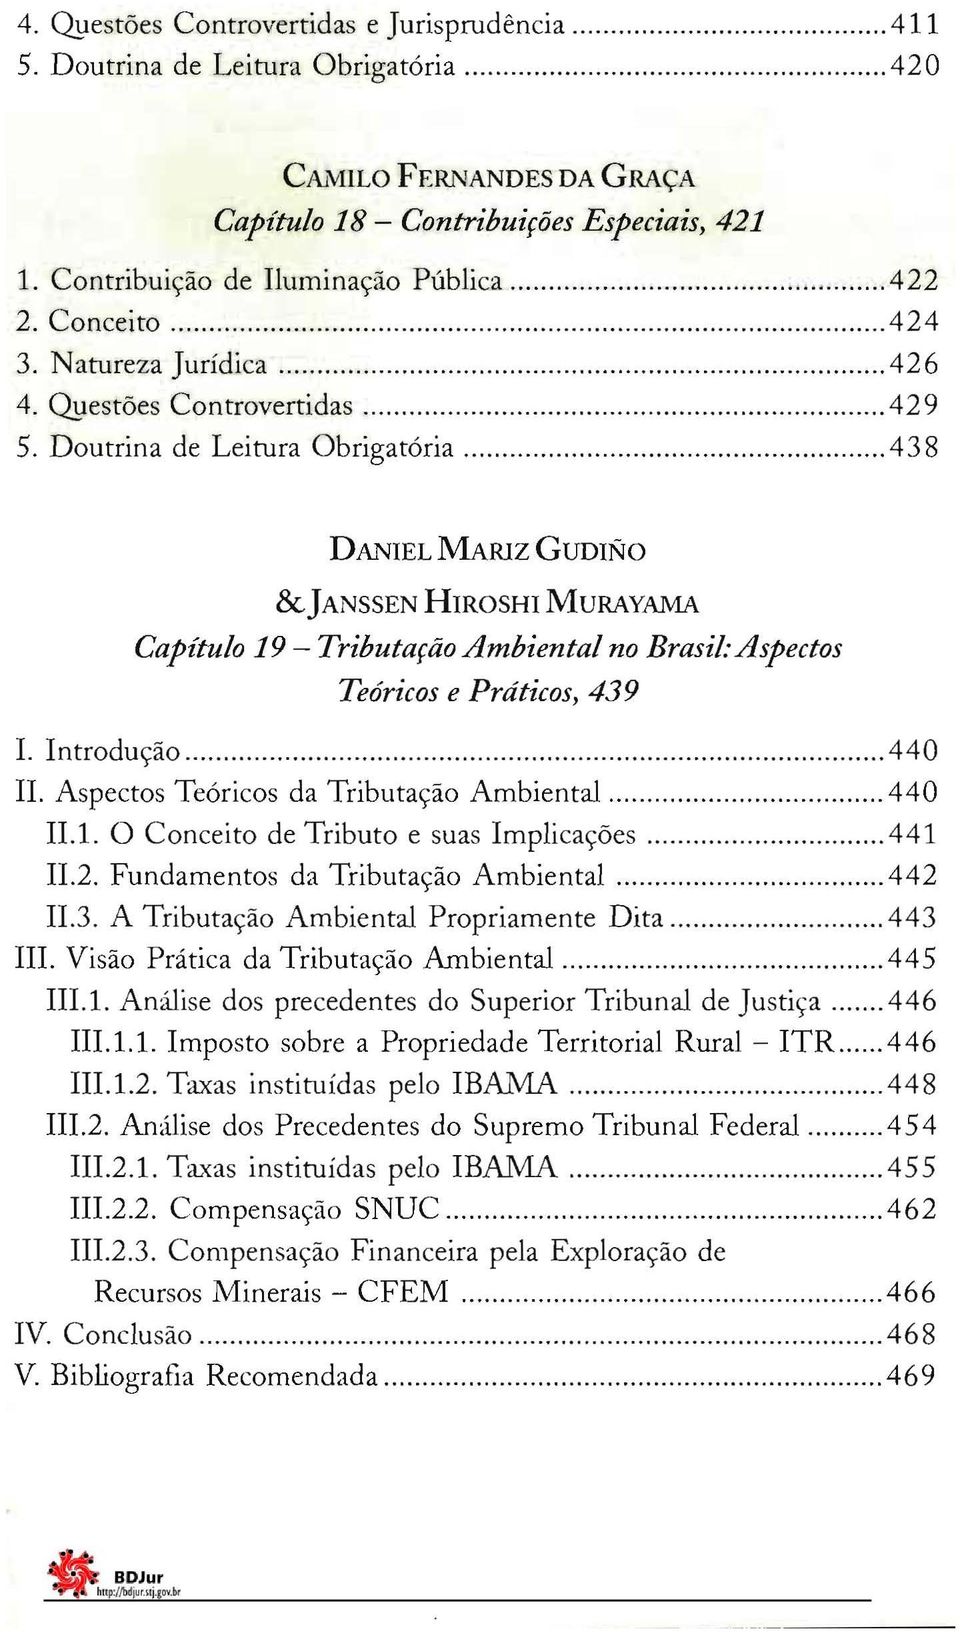 Doutrina de Leitura Obrigatória 43 8 DANIEL MARlZ GUDINO &JANSSEN HIROSHI MURAYAMA Capítulo 19 - Tributação Ambiental no Brasil: Aspectos Teóricos e Práticos, 439 I. Introdução 440 li.